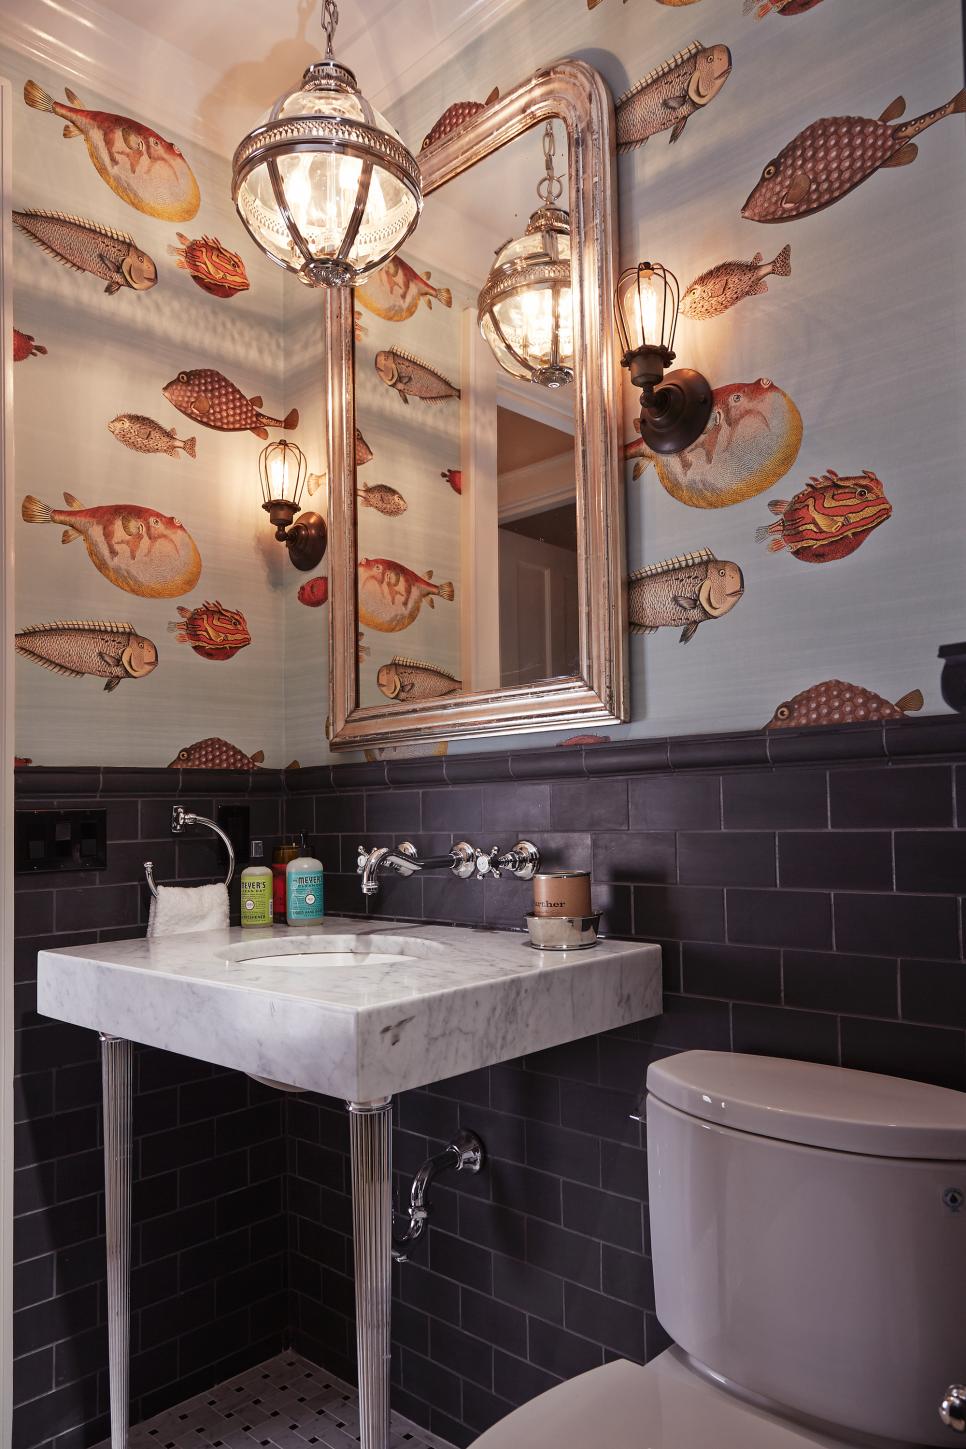 fish wallpaper for bathroom,room,interior design,tile,property,furniture